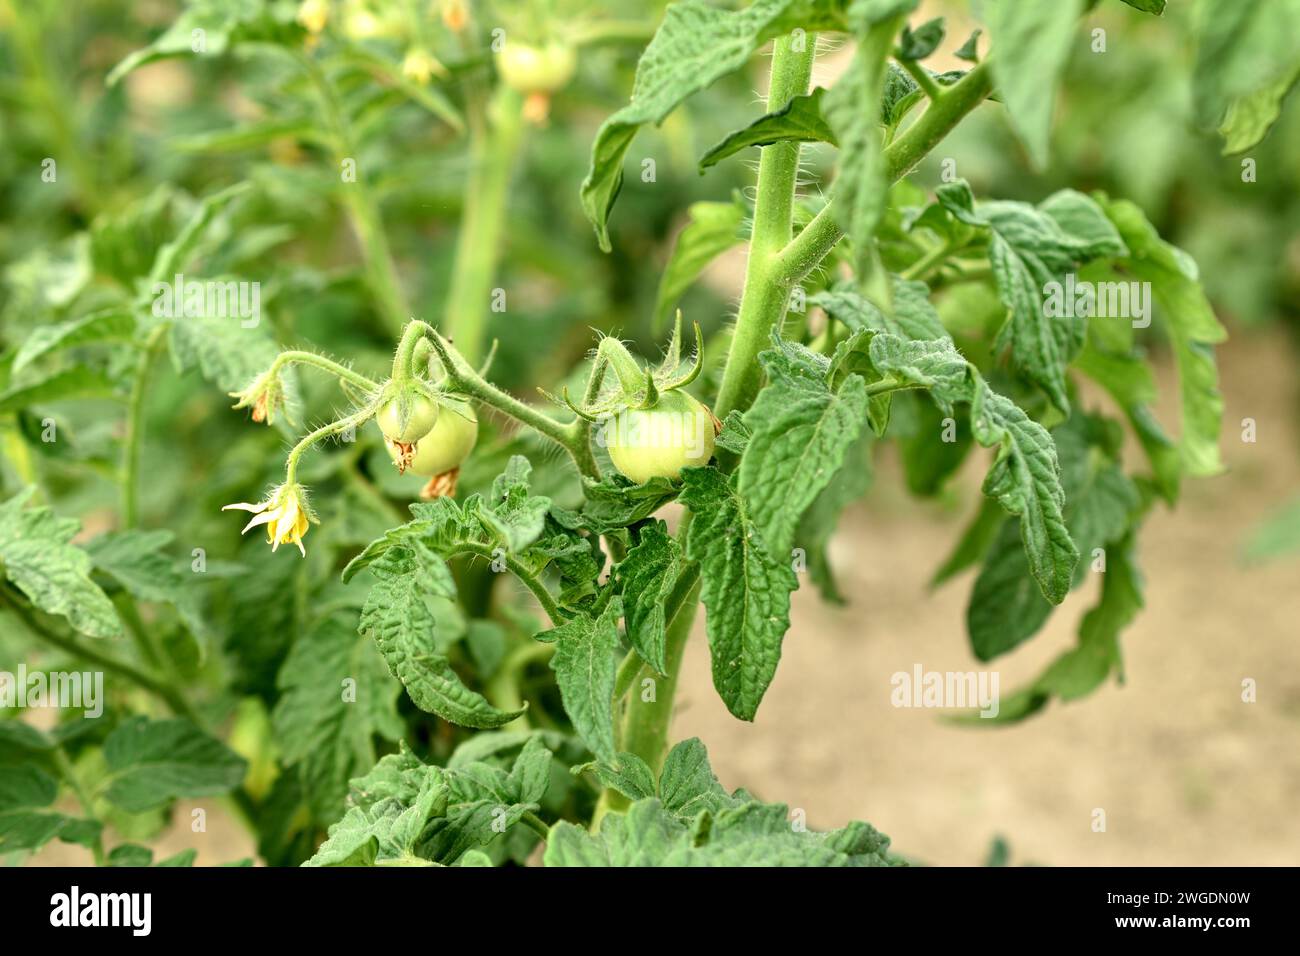 Tomate buisson. Des fleurs fleurissent sur les branches du buisson et des ovaires de tomate verte apparaissent. Banque D'Images